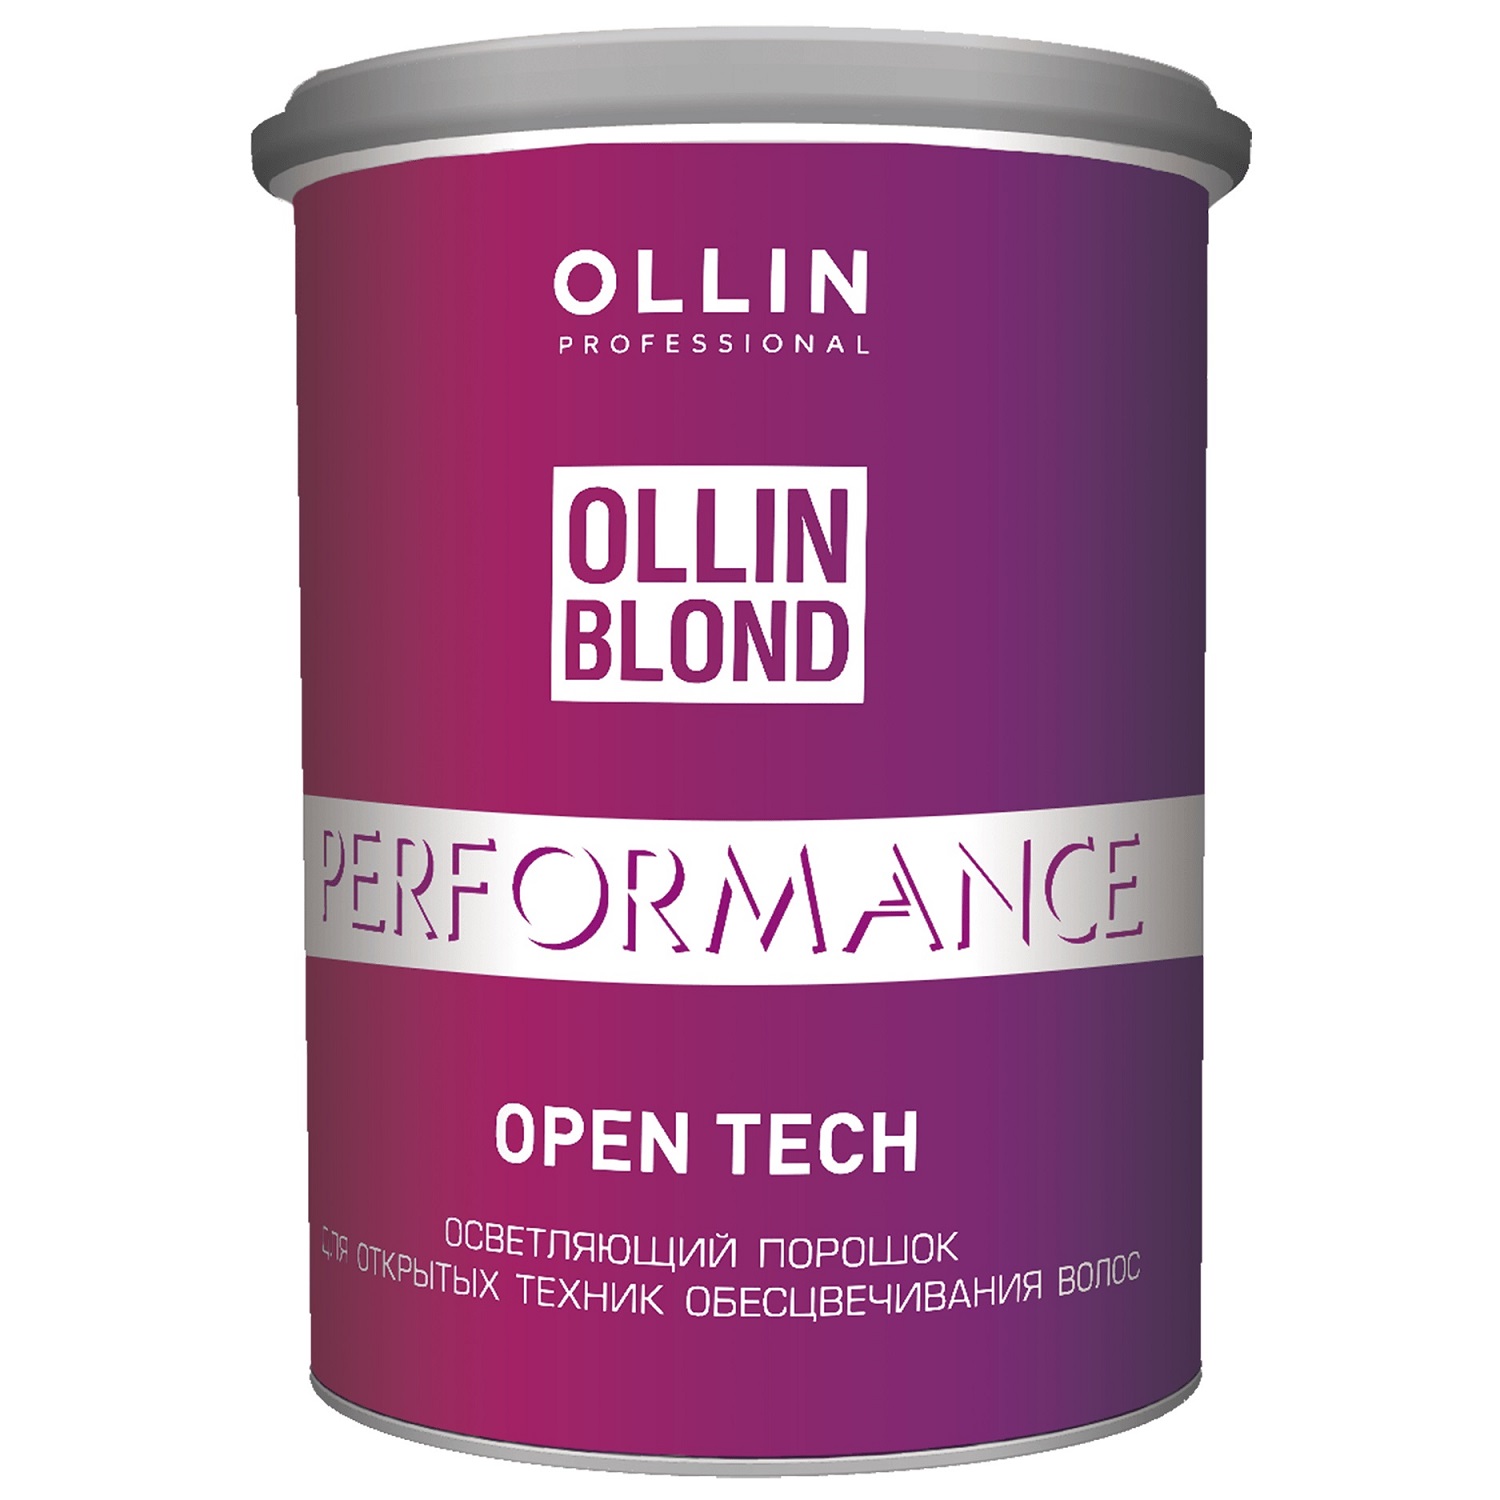 Ollin Professional Осветляющий порошок Open Tech для открыты